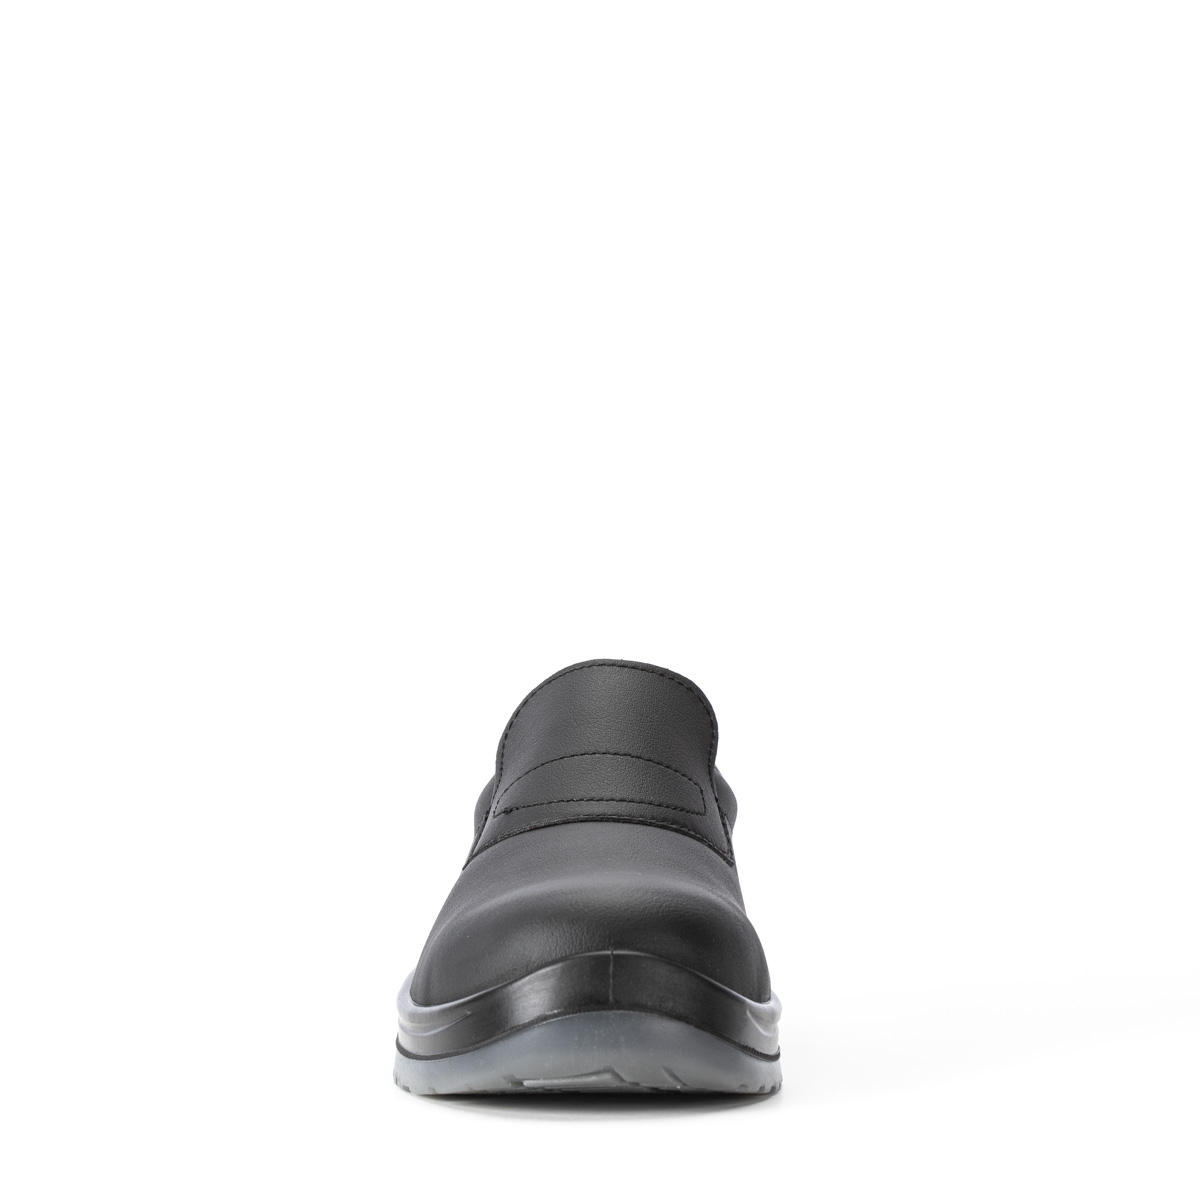 Crystal VENEZIA - SRC con Codice classe Sixton Peak S2 86203-01 protezione - modello Safety Shoes di Chaussure